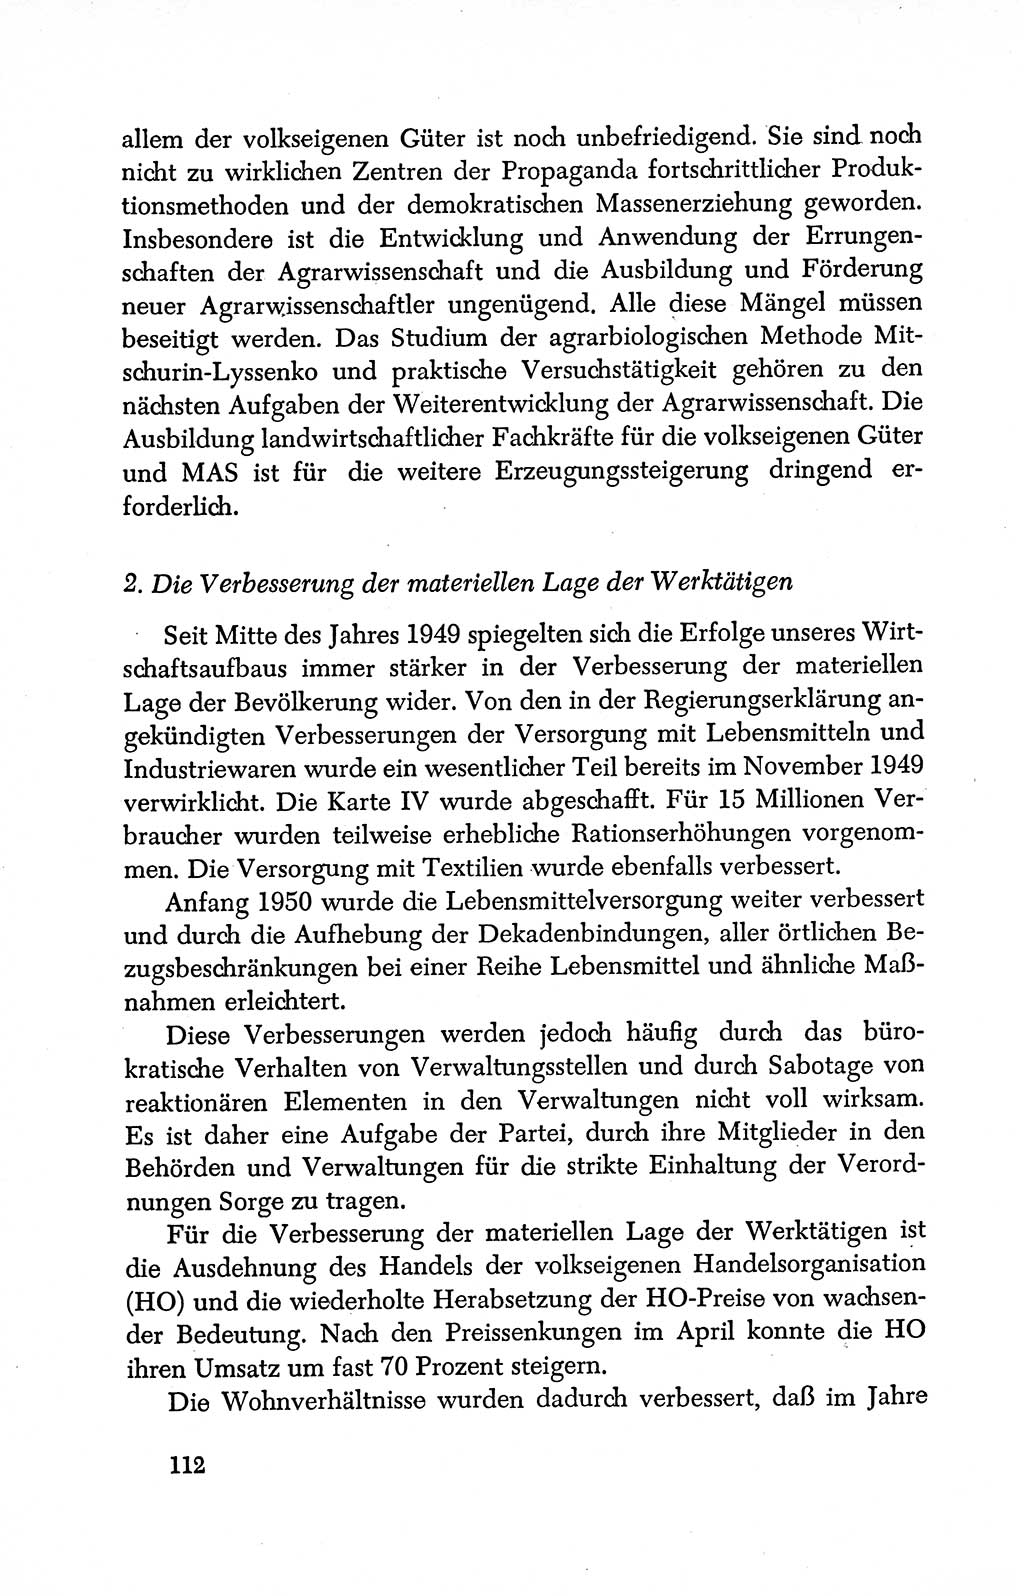 Dokumente der Sozialistischen Einheitspartei Deutschlands (SED) [Deutsche Demokratische Republik (DDR)] 1950-1952, Seite 112 (Dok. SED DDR 1950-1952, S. 112)